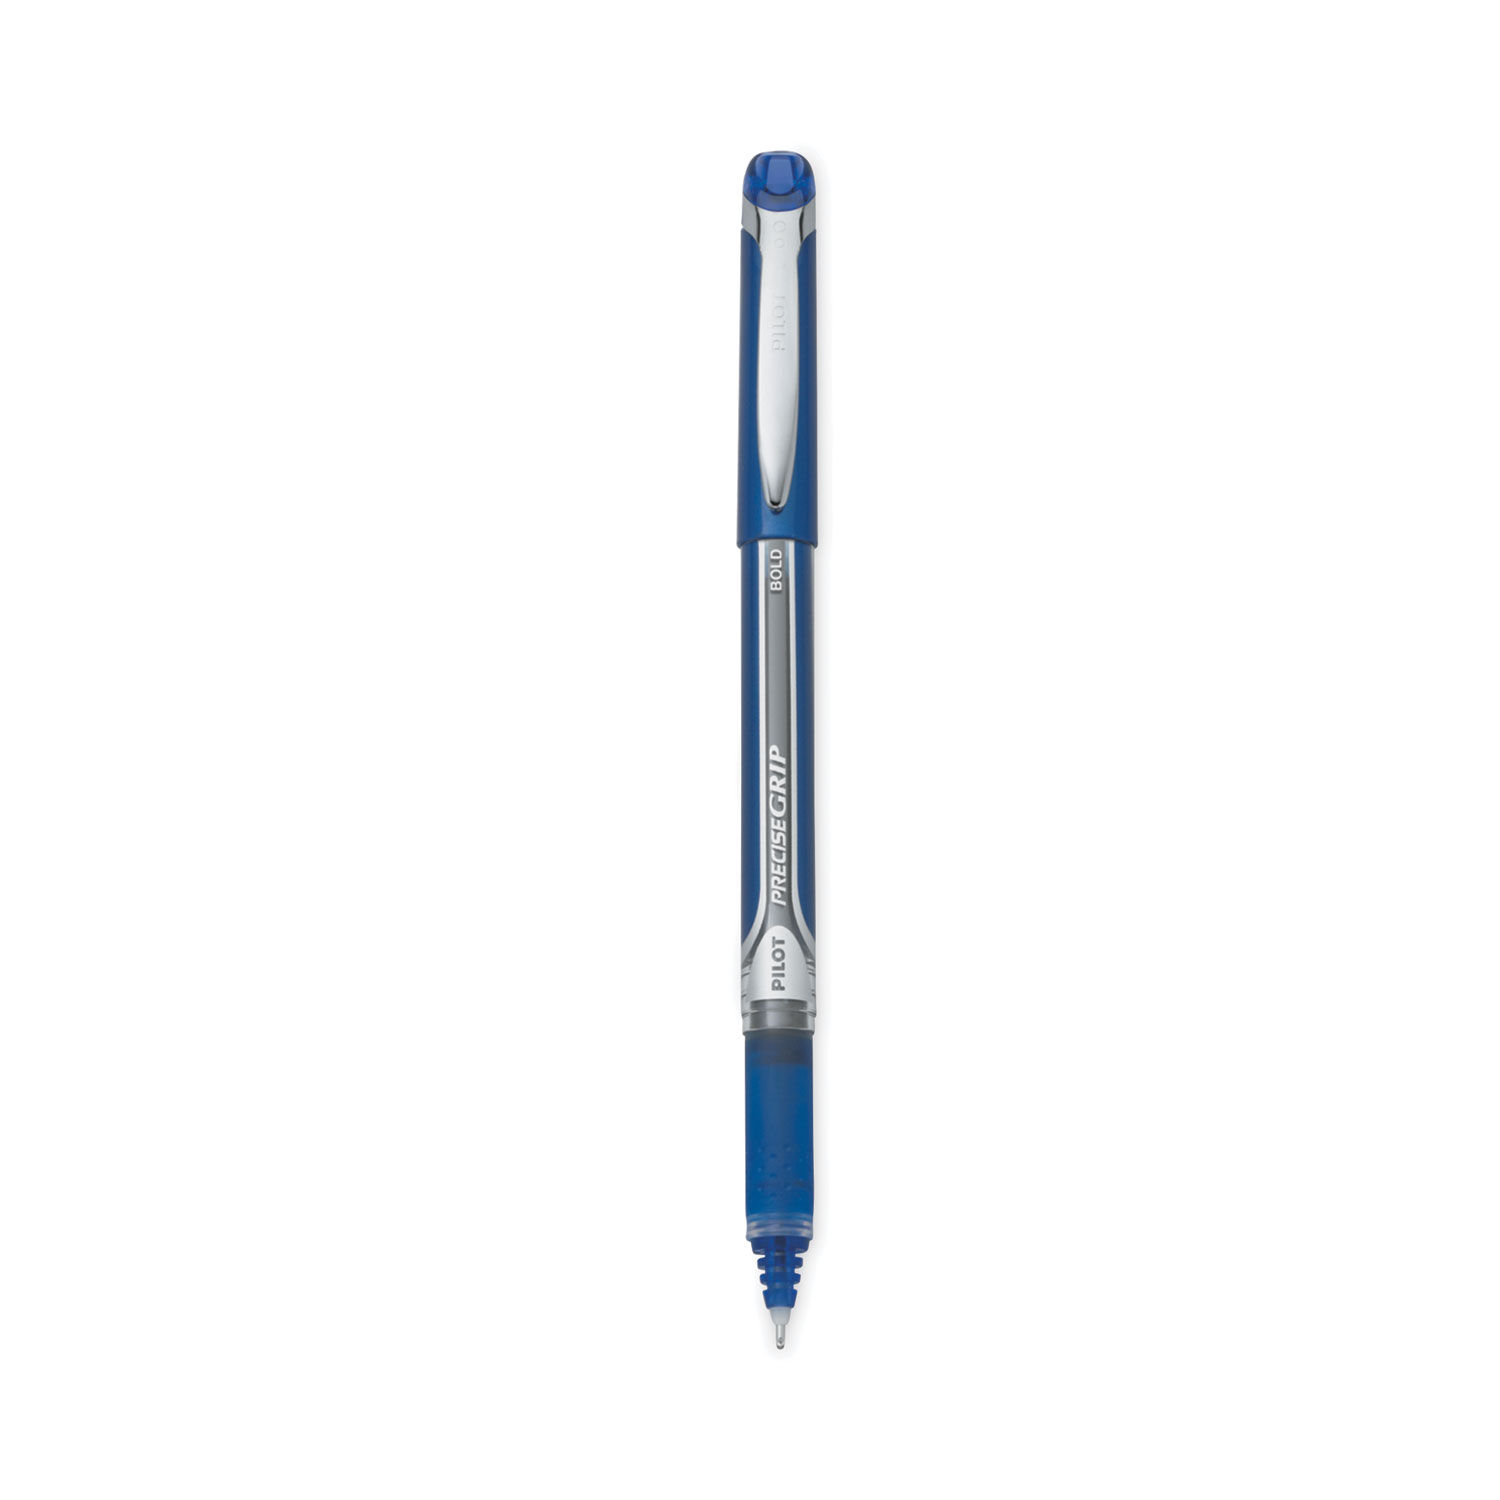 Precise Grip Roller Ball Pen by Pilotandreg; PIL28902